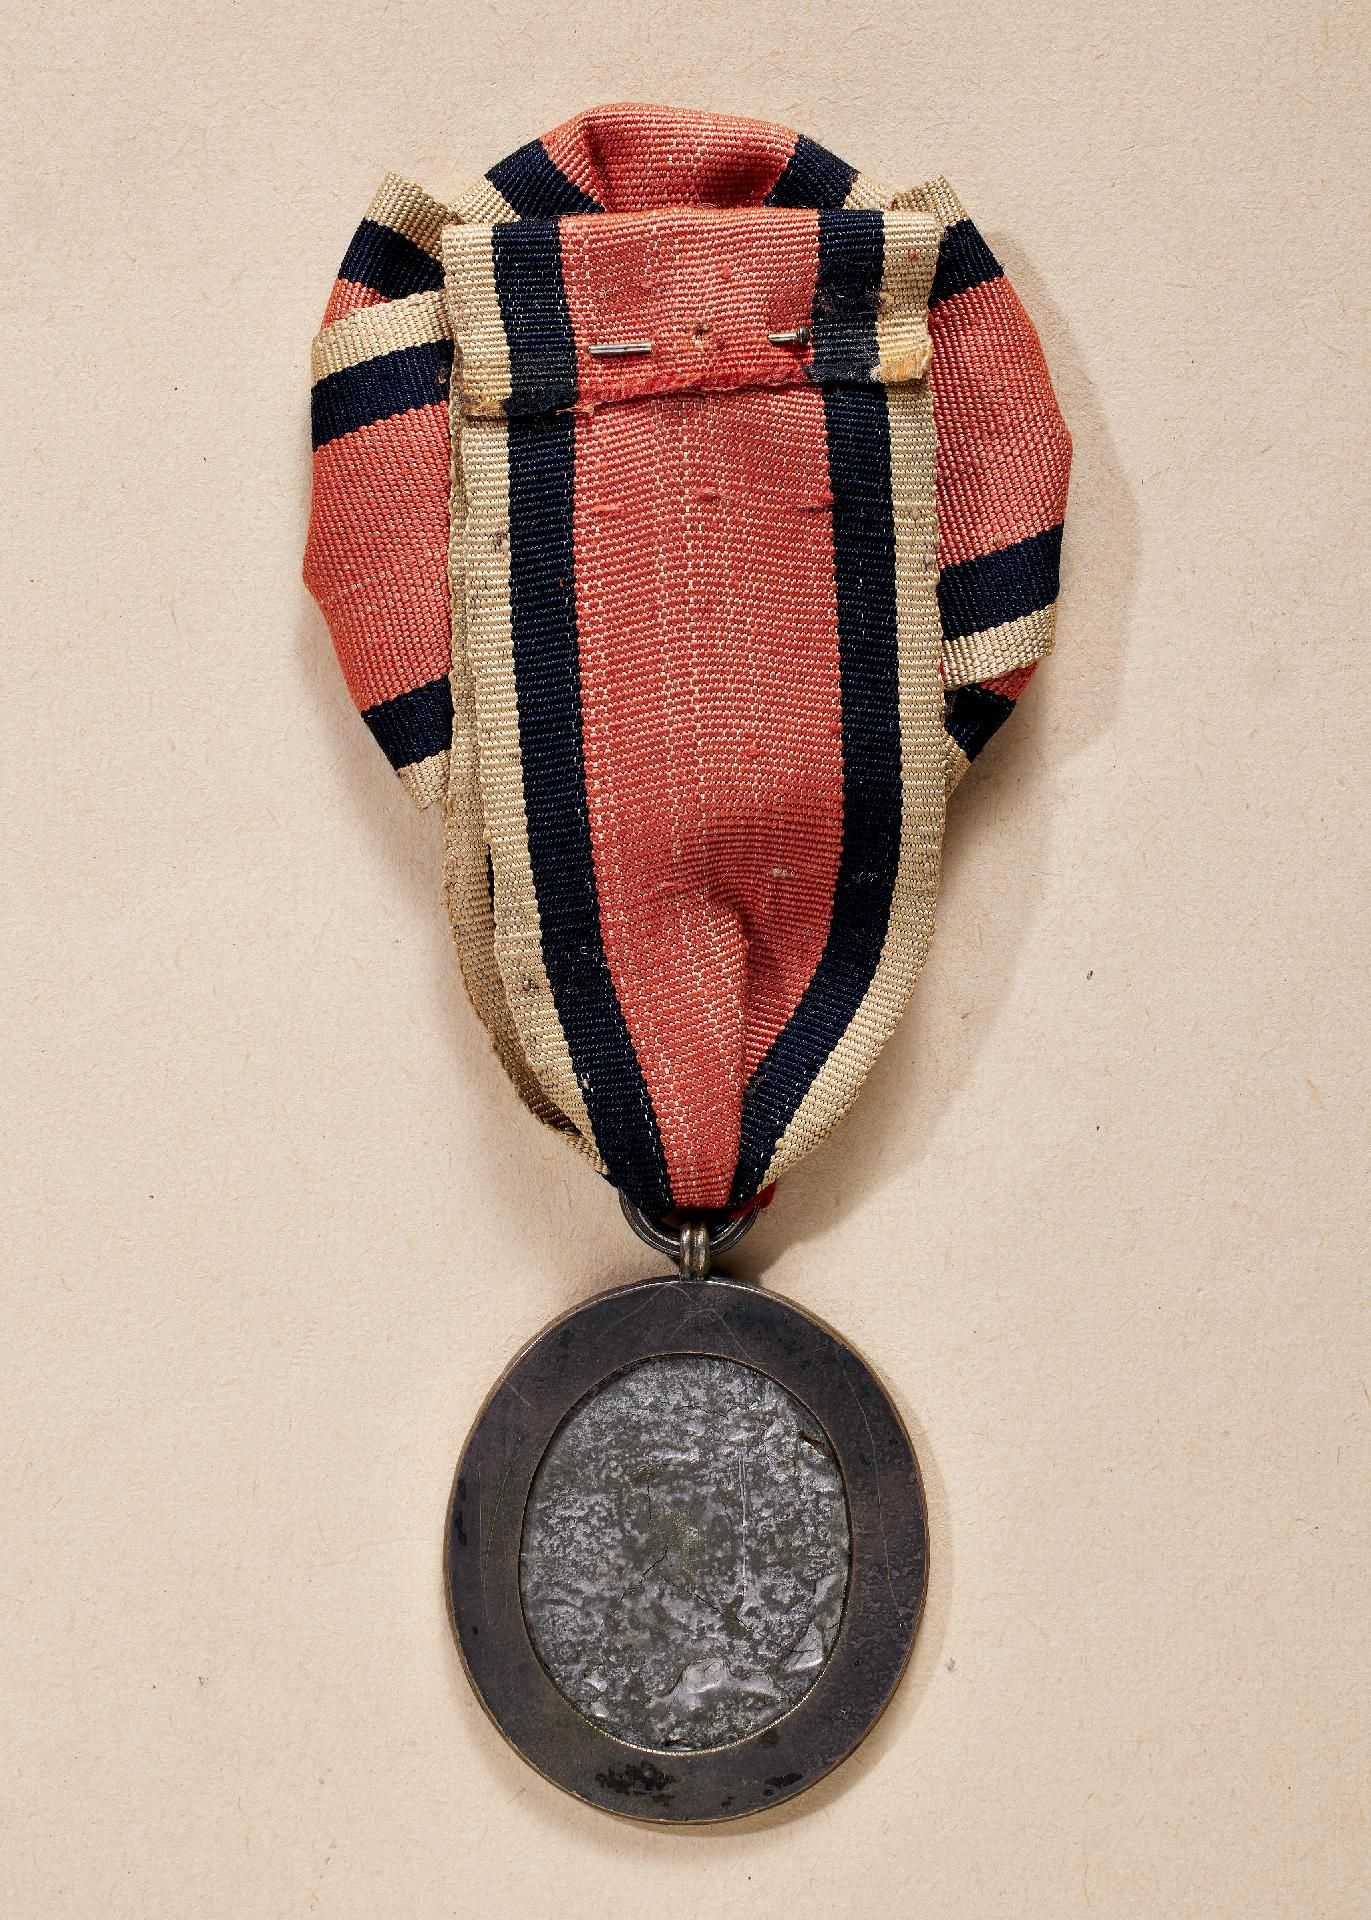 Frankreich : Insignie der Vereinigung der Eroberer der Bastille (Médaille - Insigne de L'Associa... - Bild 2 aus 2